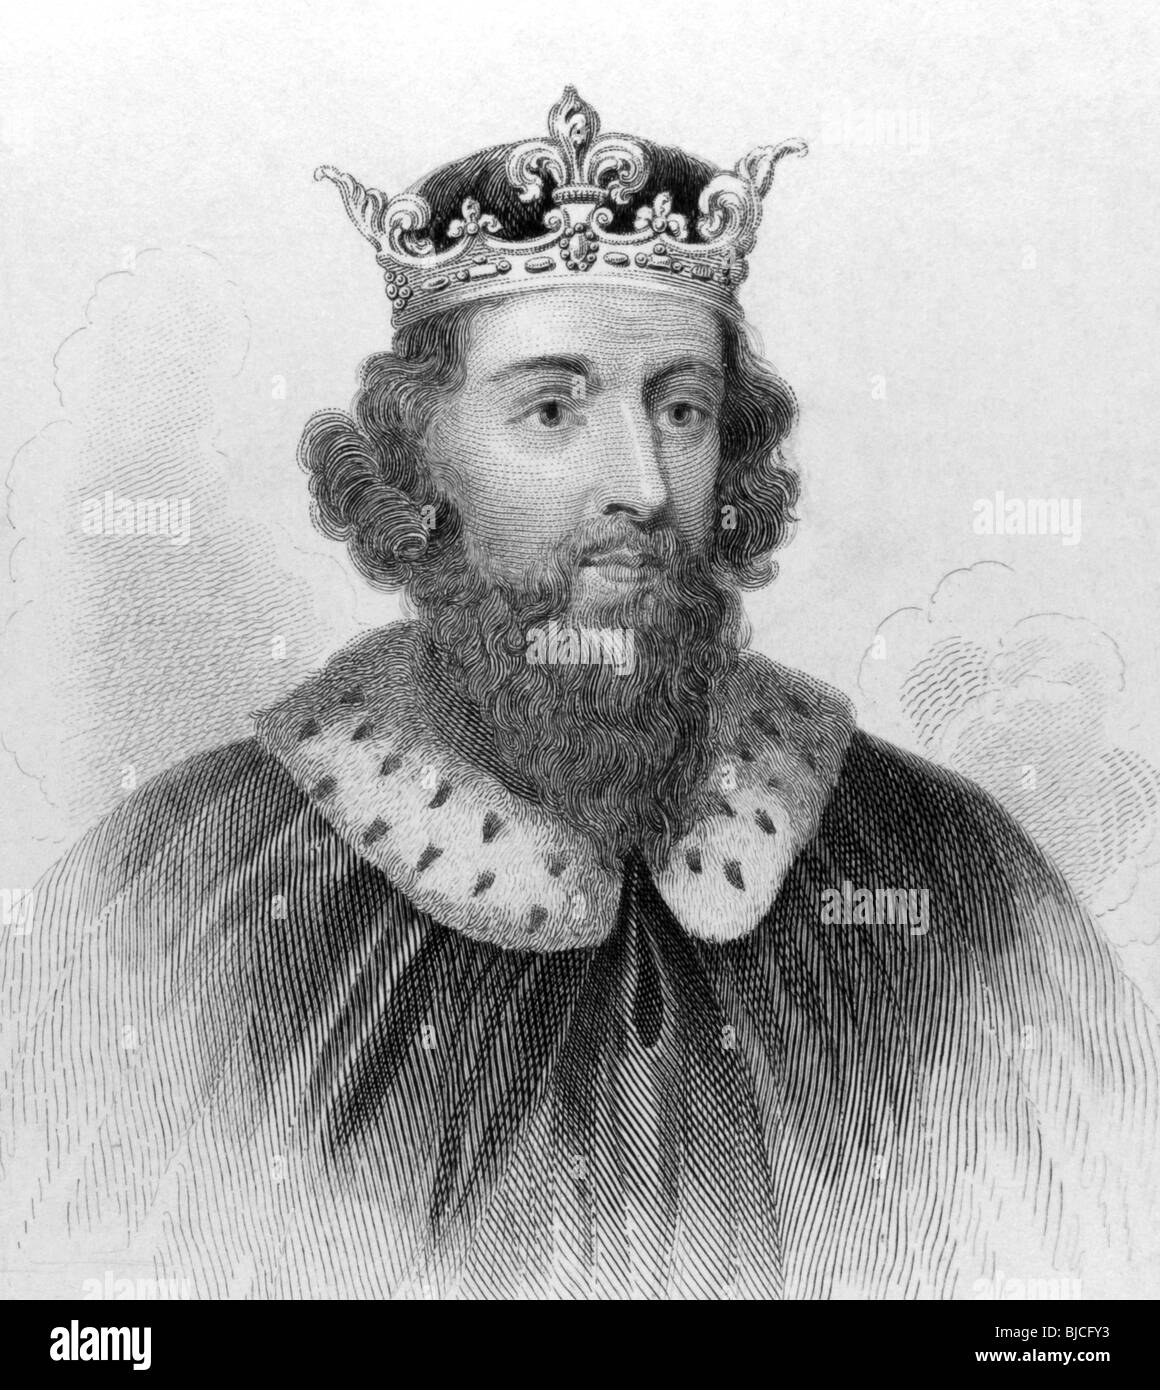 Le Roi Alfred le Grand (849-899) sur la gravure des années 1800. Roi de la royaume anglo-saxon du Wessex de 871 à 899. Banque D'Images